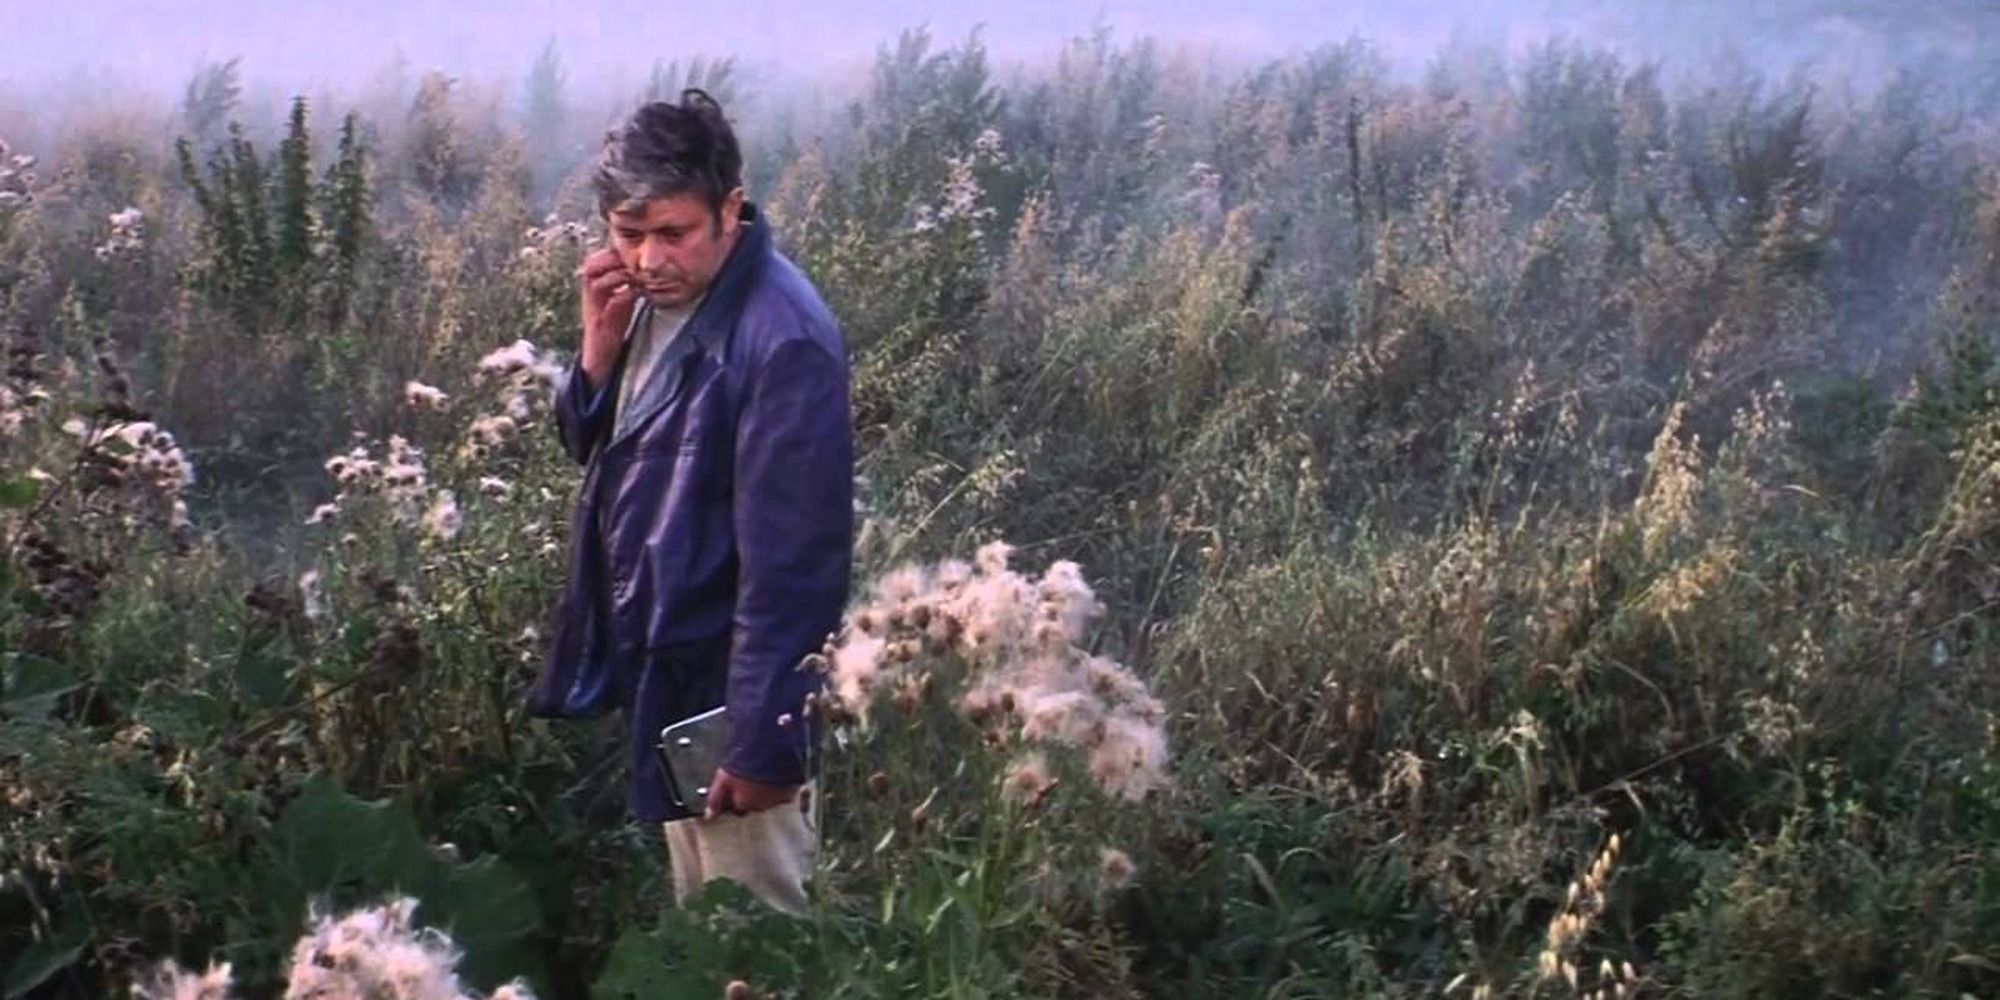 Um homem contempla seus arredores em um campo gramado cheio de plantas frescas.